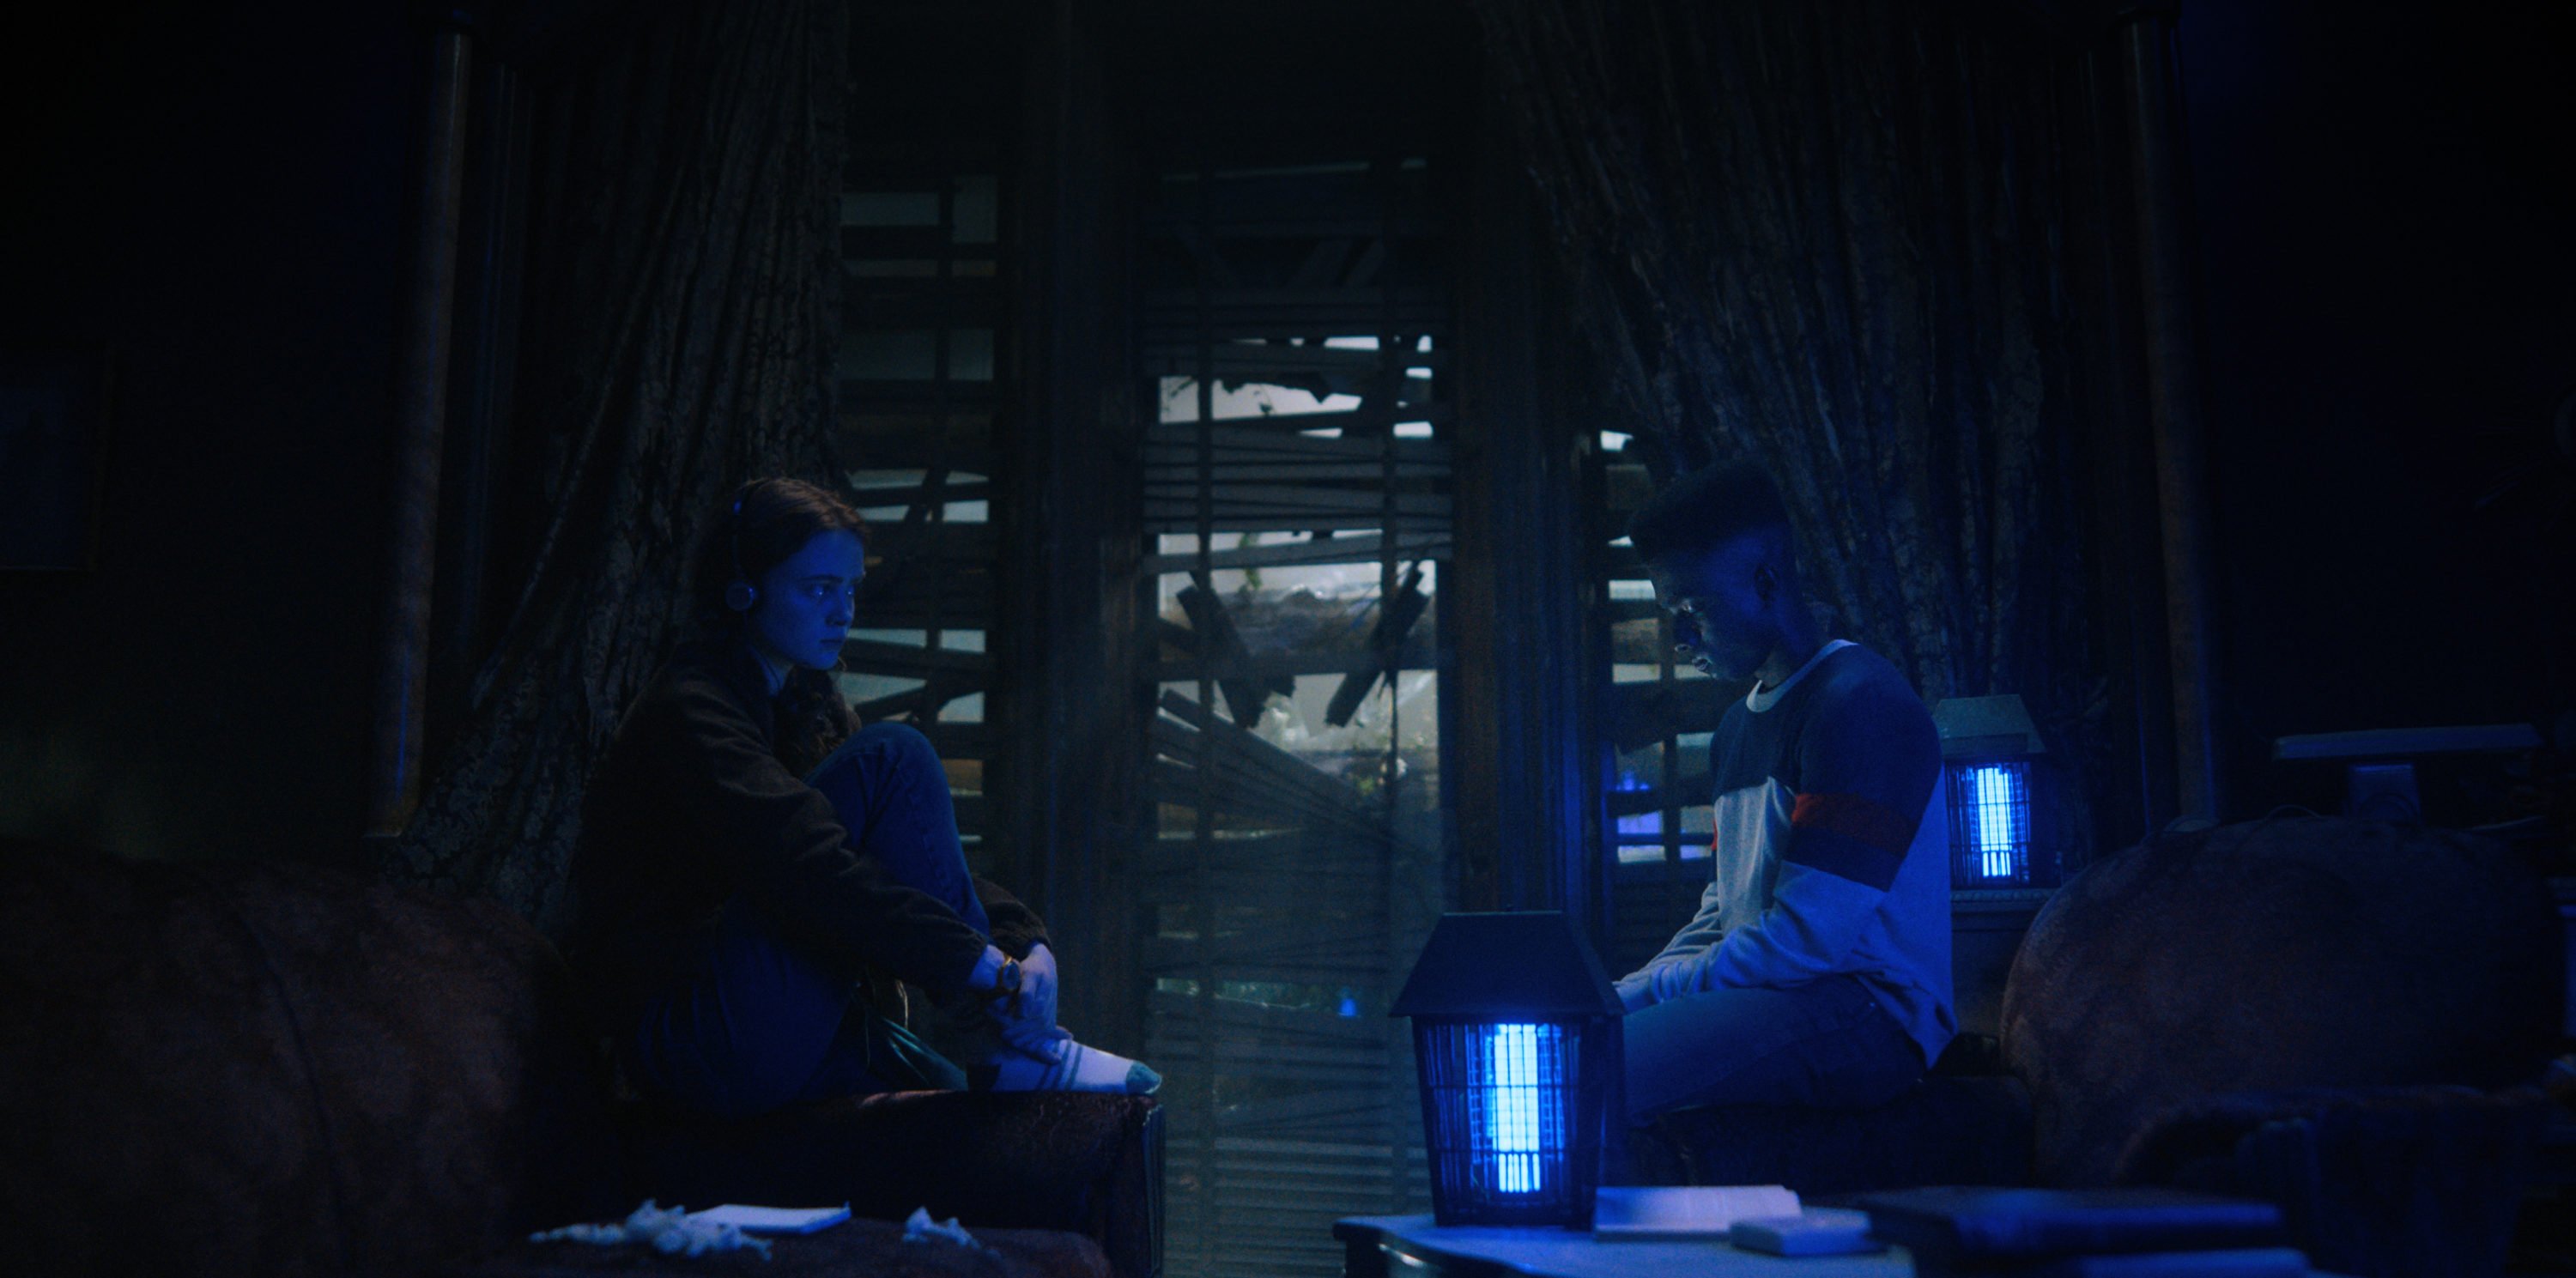 Stranger Things 4 – parte 2 ganha trailer de arrepiar - Pátio Hype